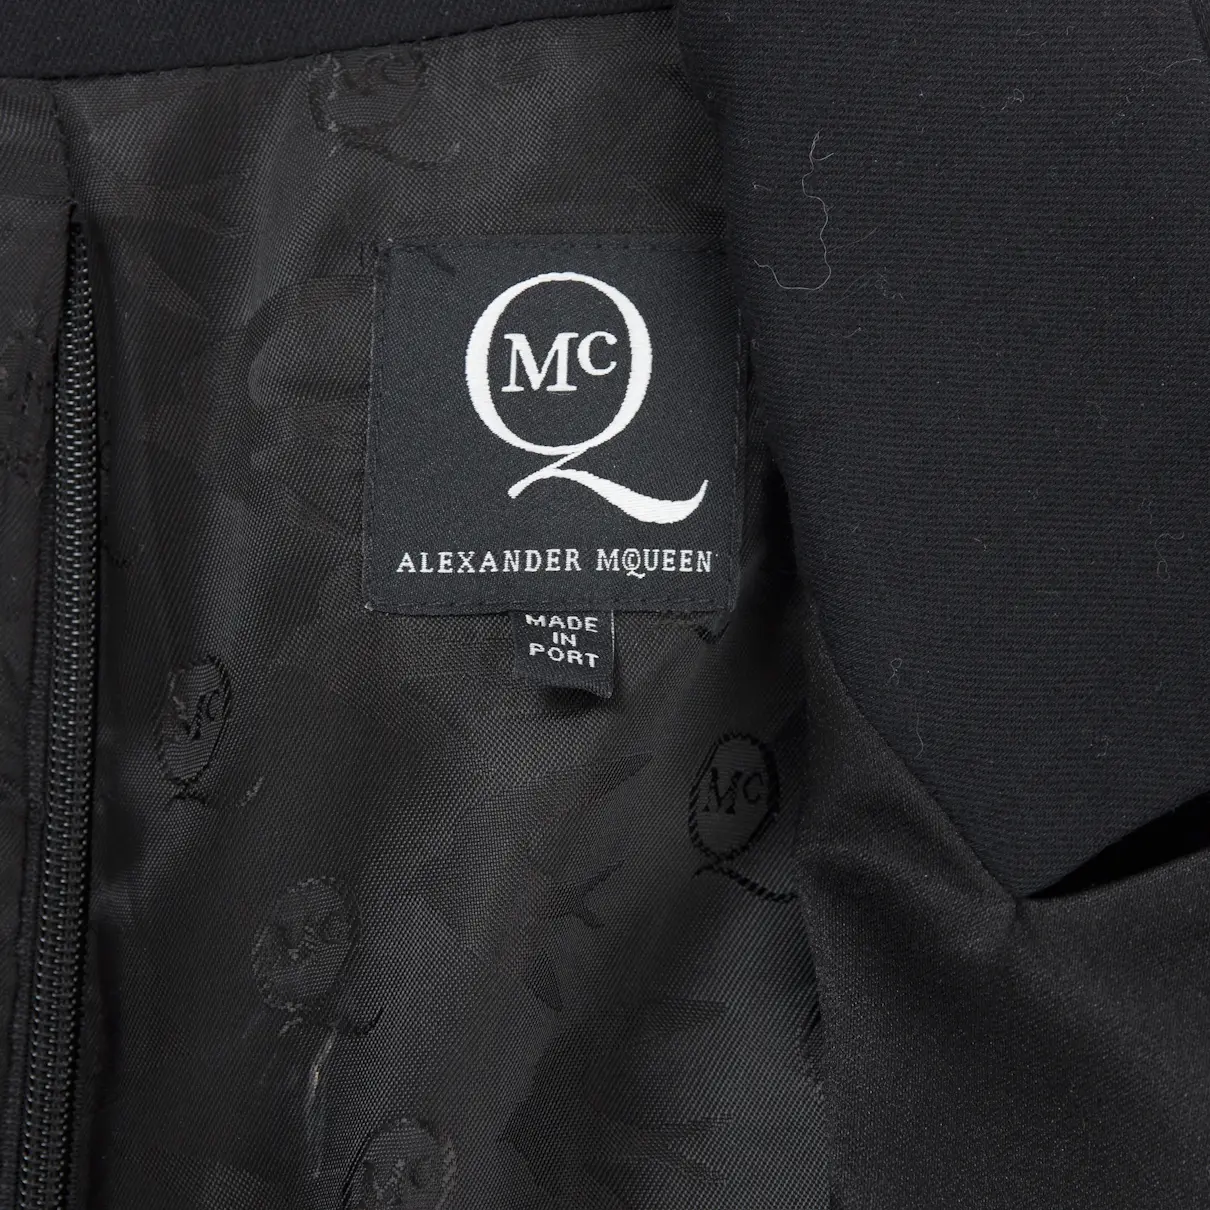 Buy Alexander McQueen Black Dress online